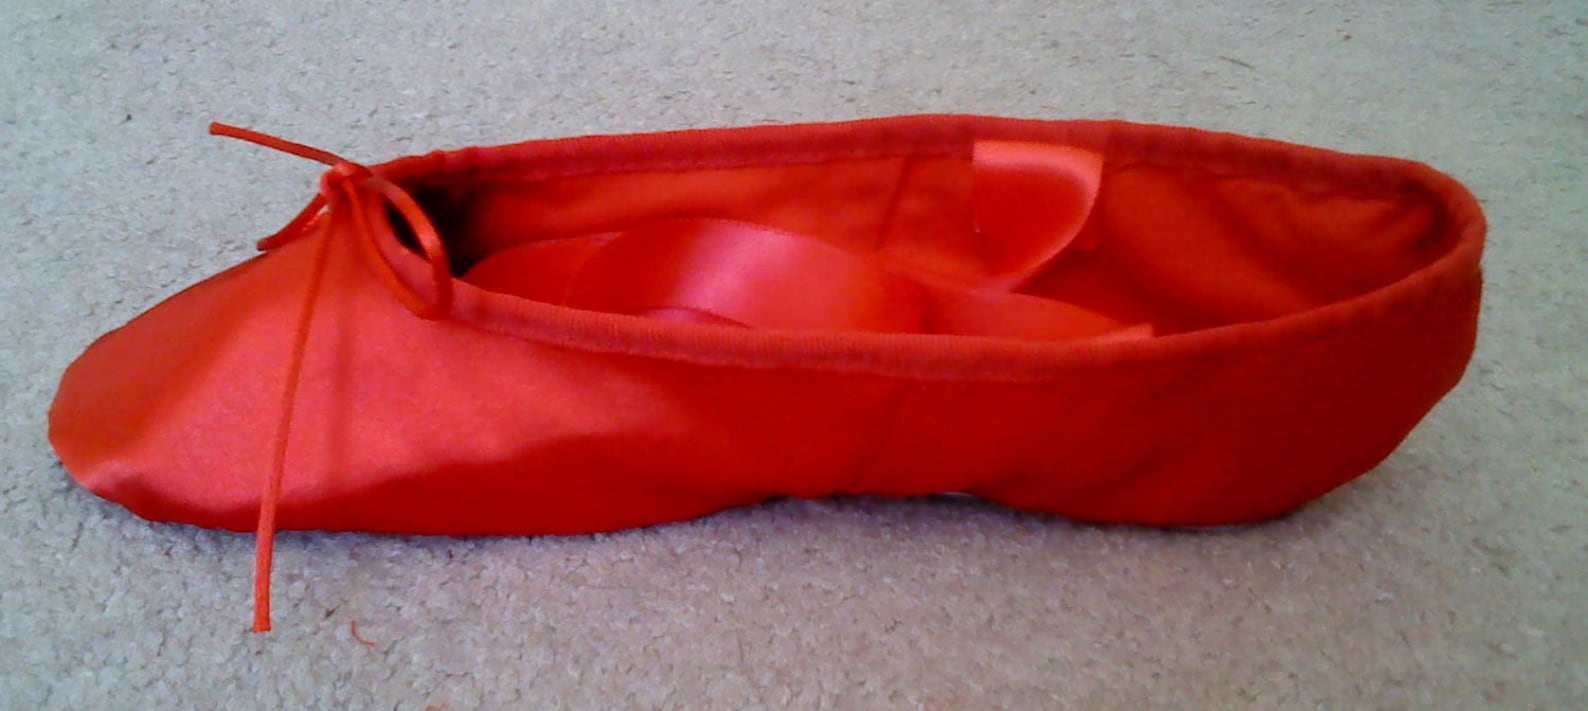 red satin ballet slippers - full soles or split soles